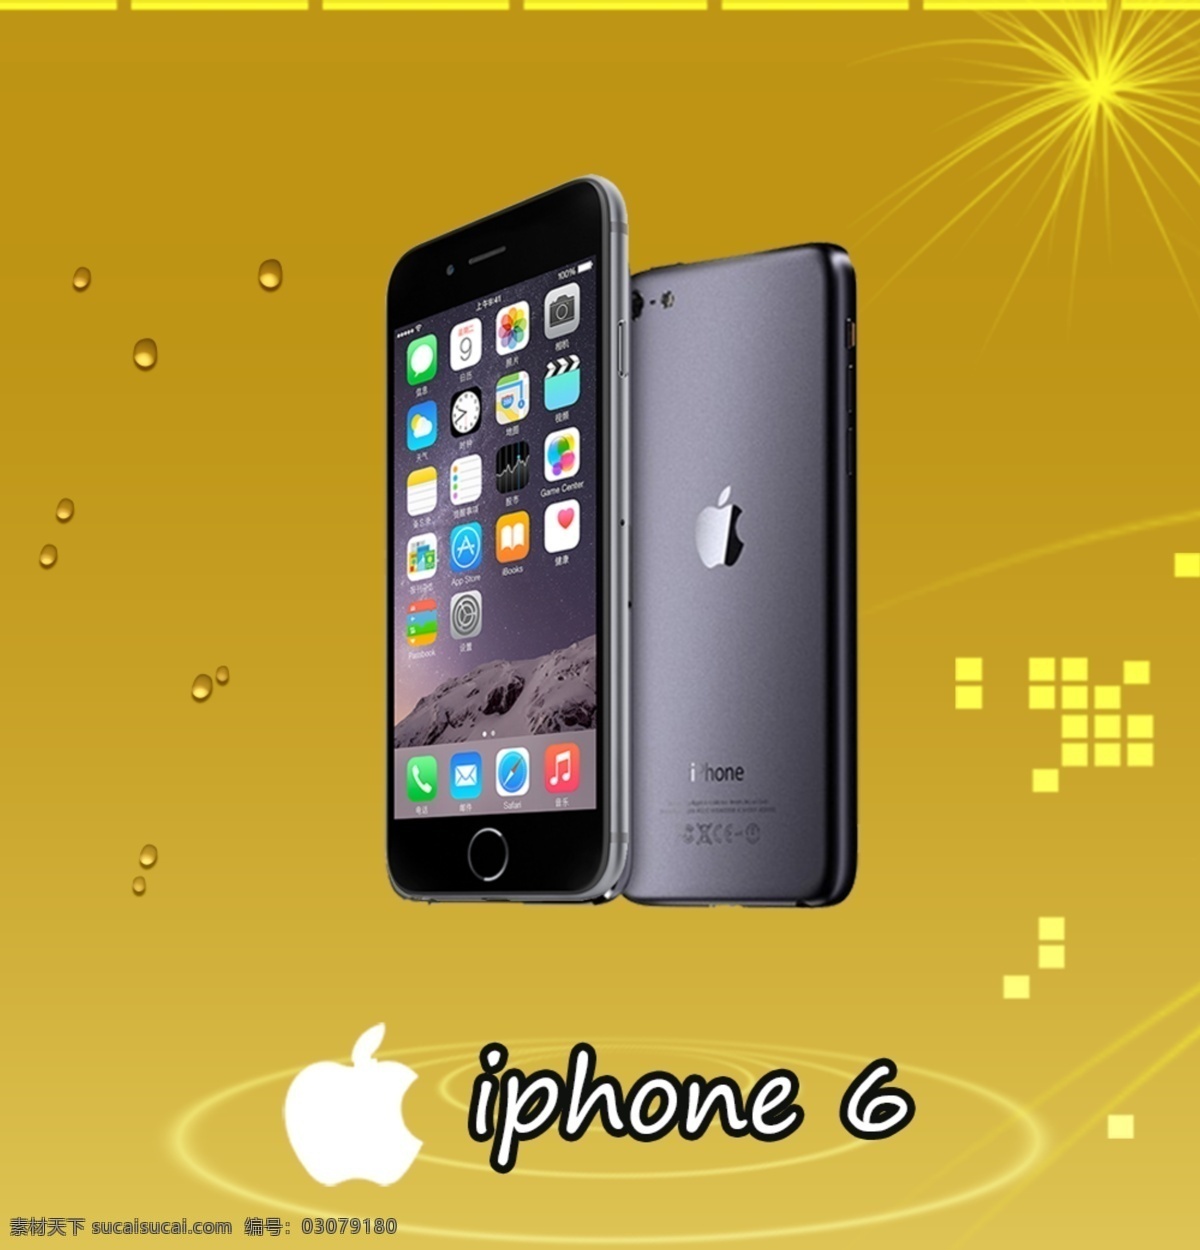 苹果 iphone6 产品展示 苹果6 手机 高清 分层 高档 新款 美国 科技 数码 设计广告 信息 热卖 广告图 现代科技 数码产品 棕色